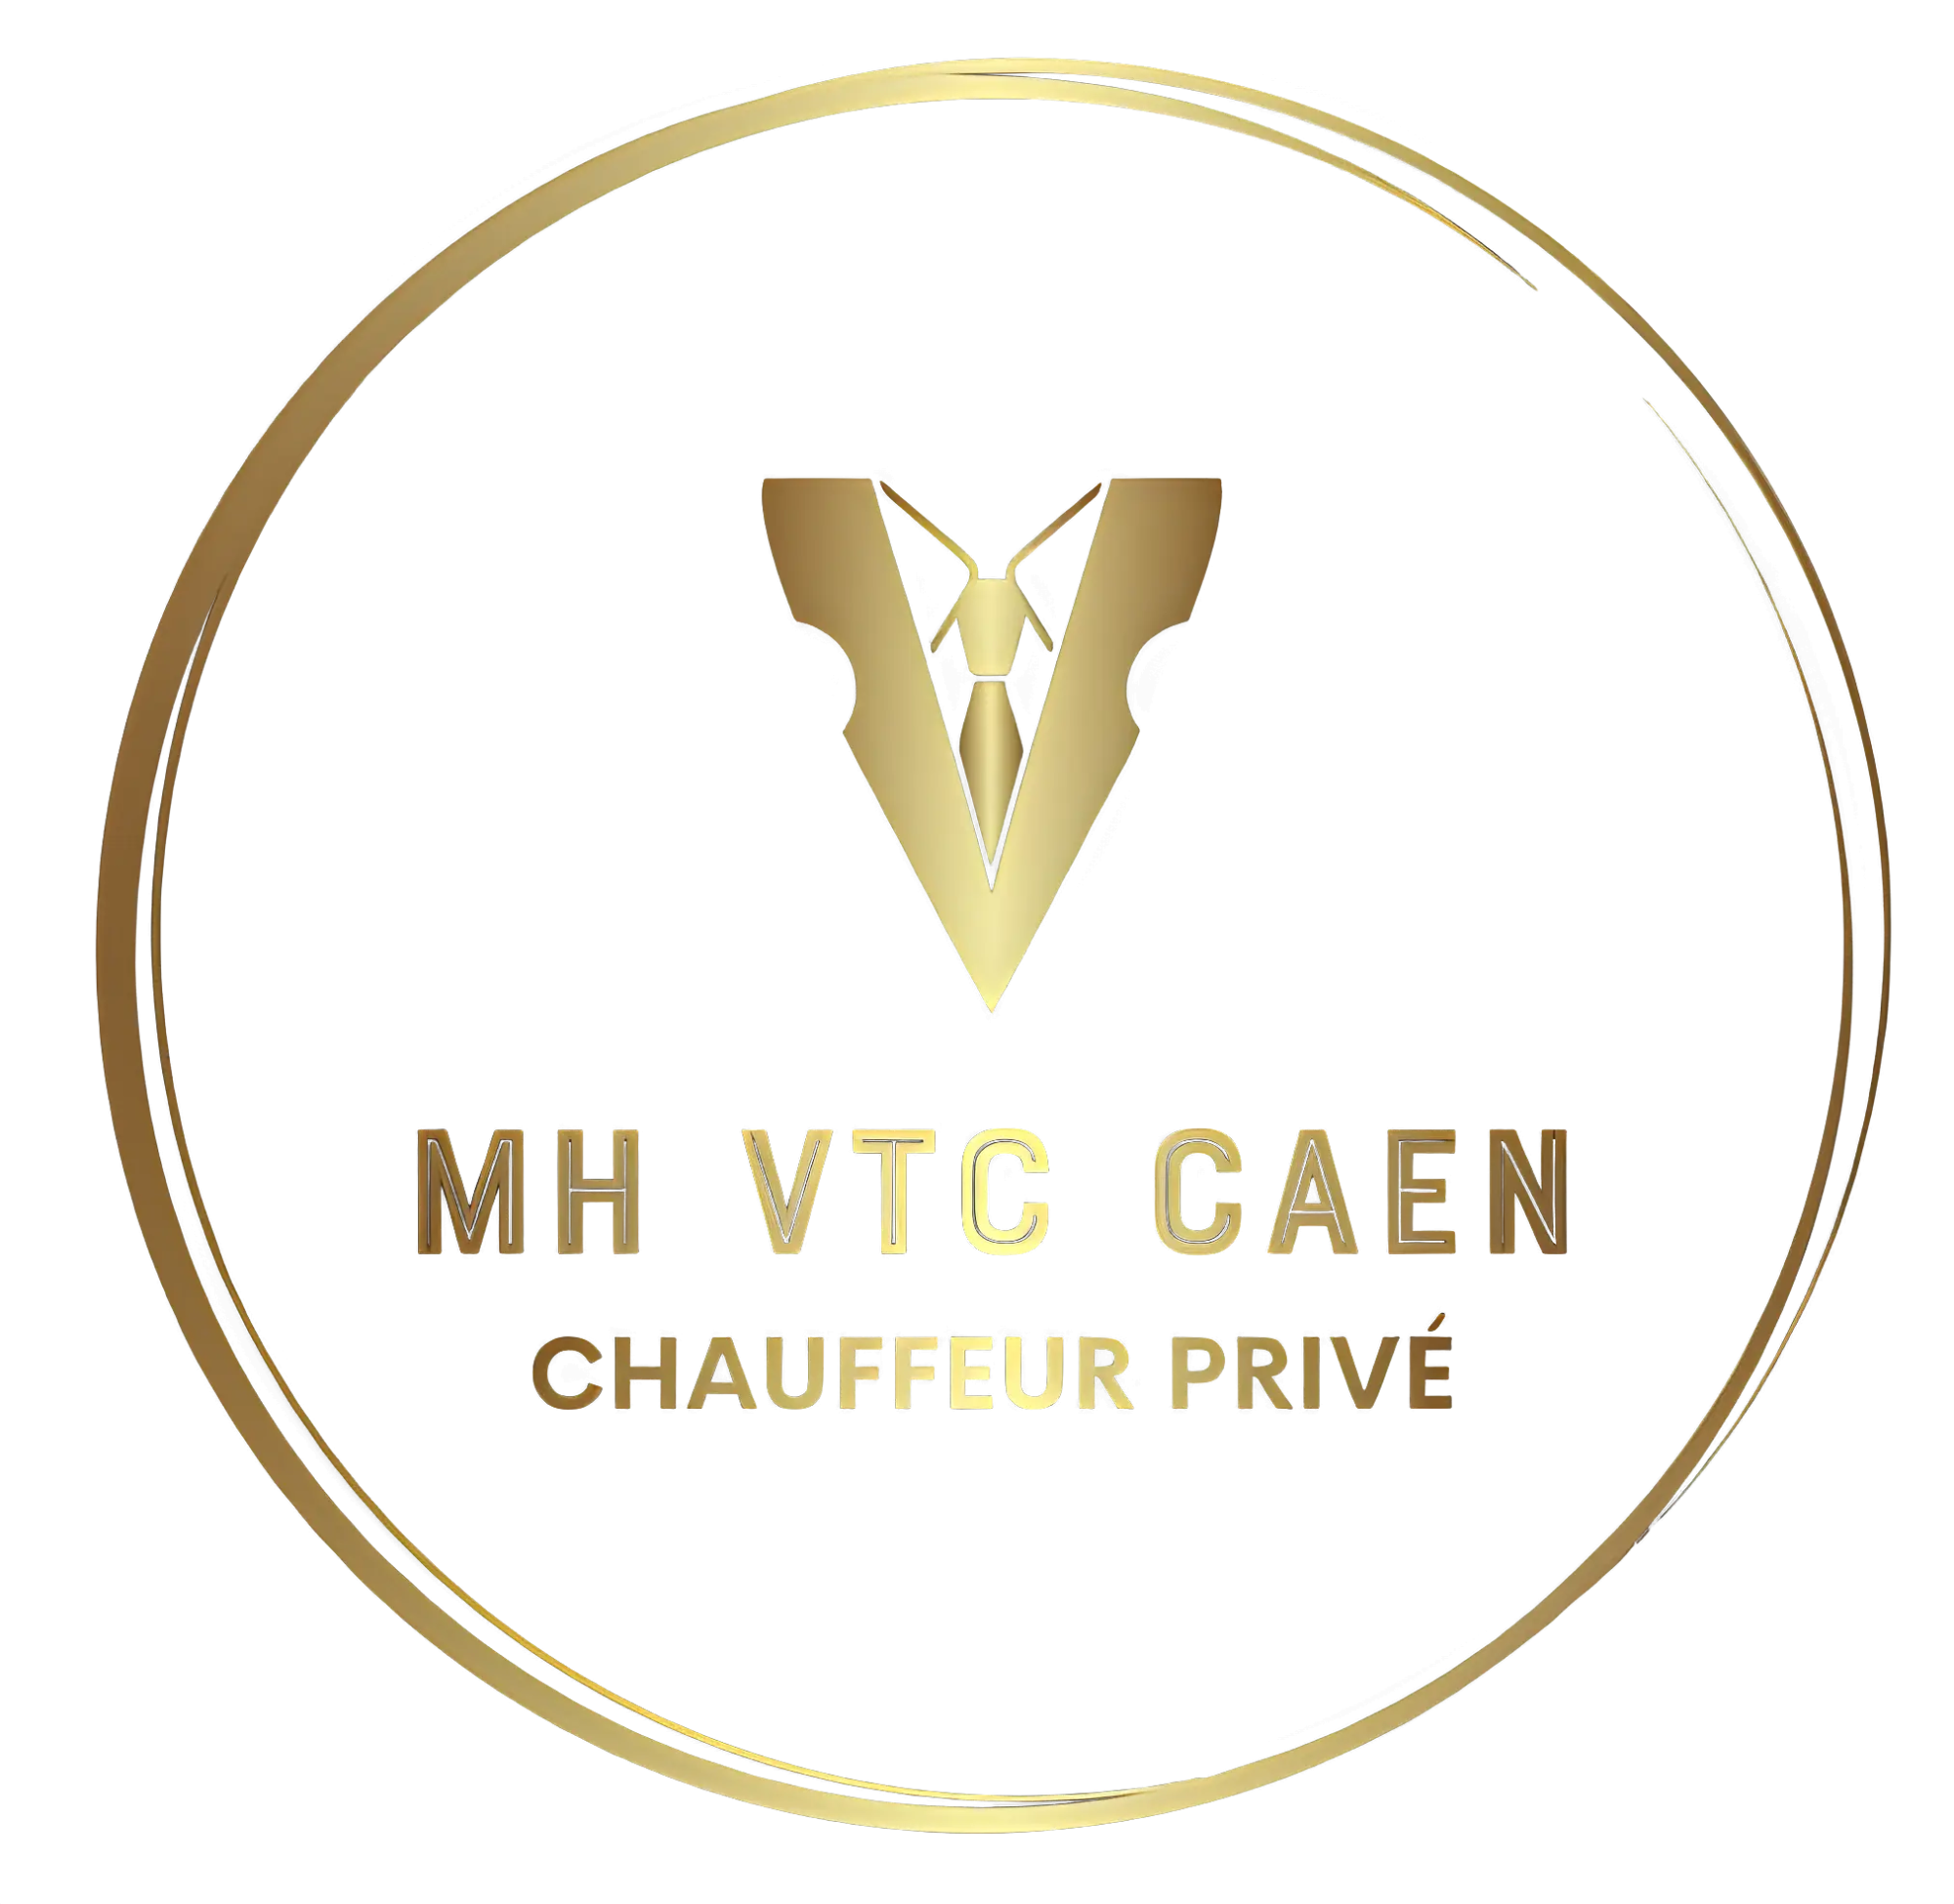 MH_VTC_CAEN_LOGO_-removebg-preview (1)VTC CAEN TAXI CAEN